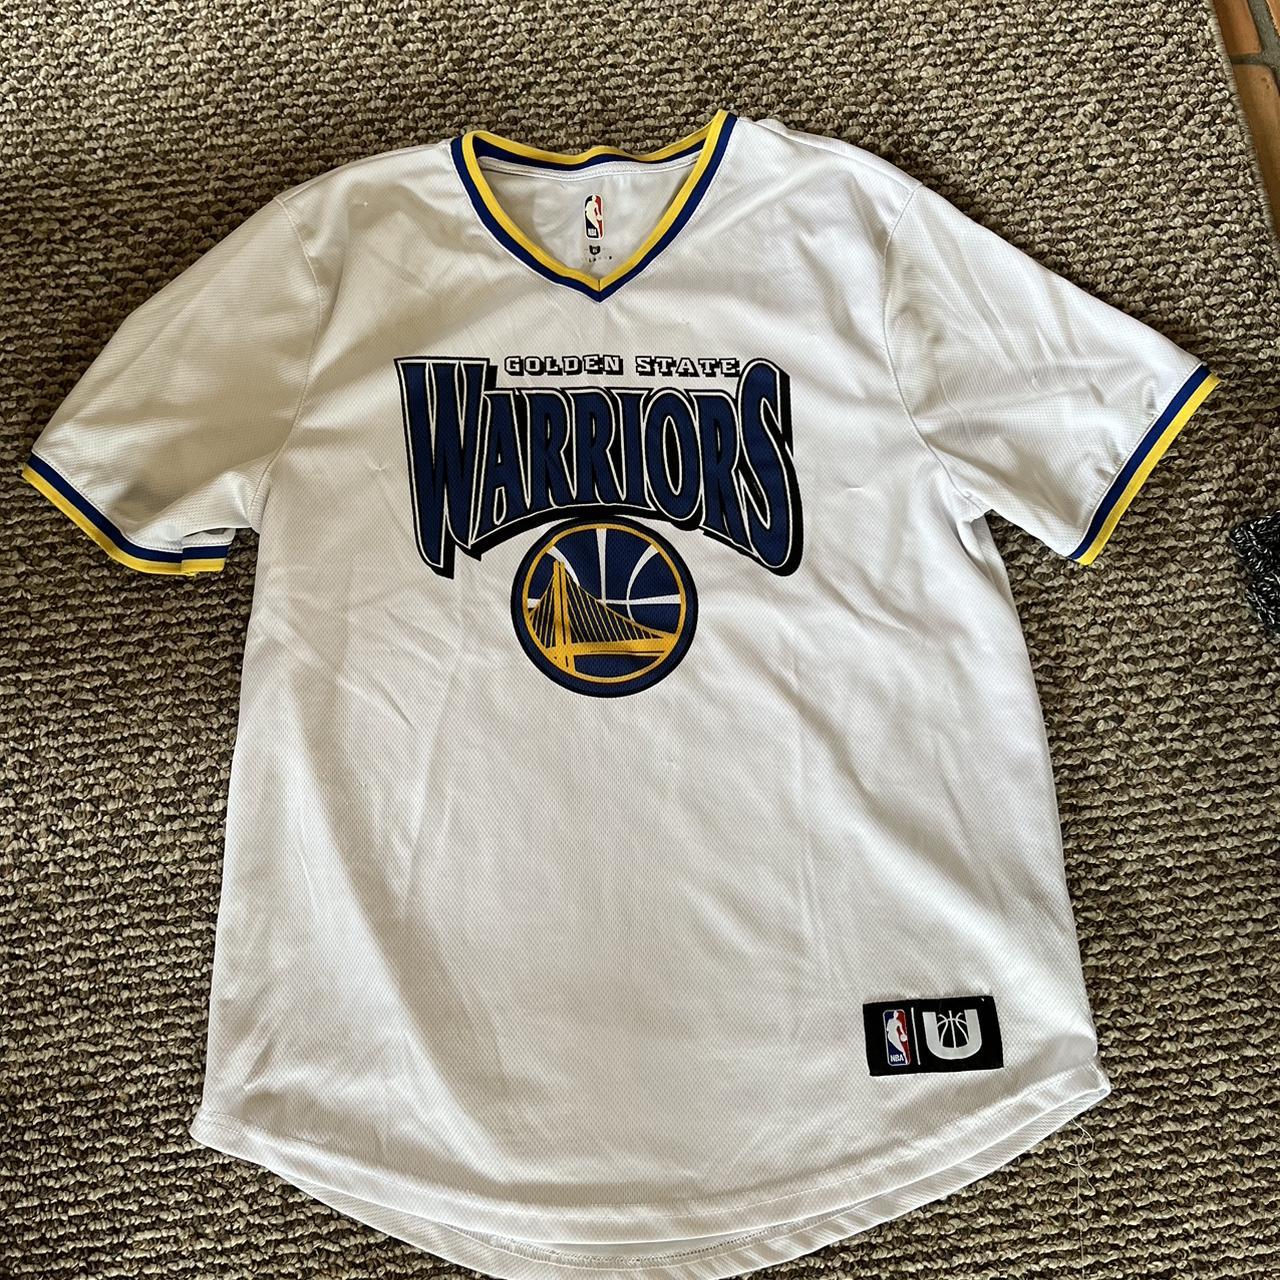 Golden state warriors baseball jersey Size small. - Depop